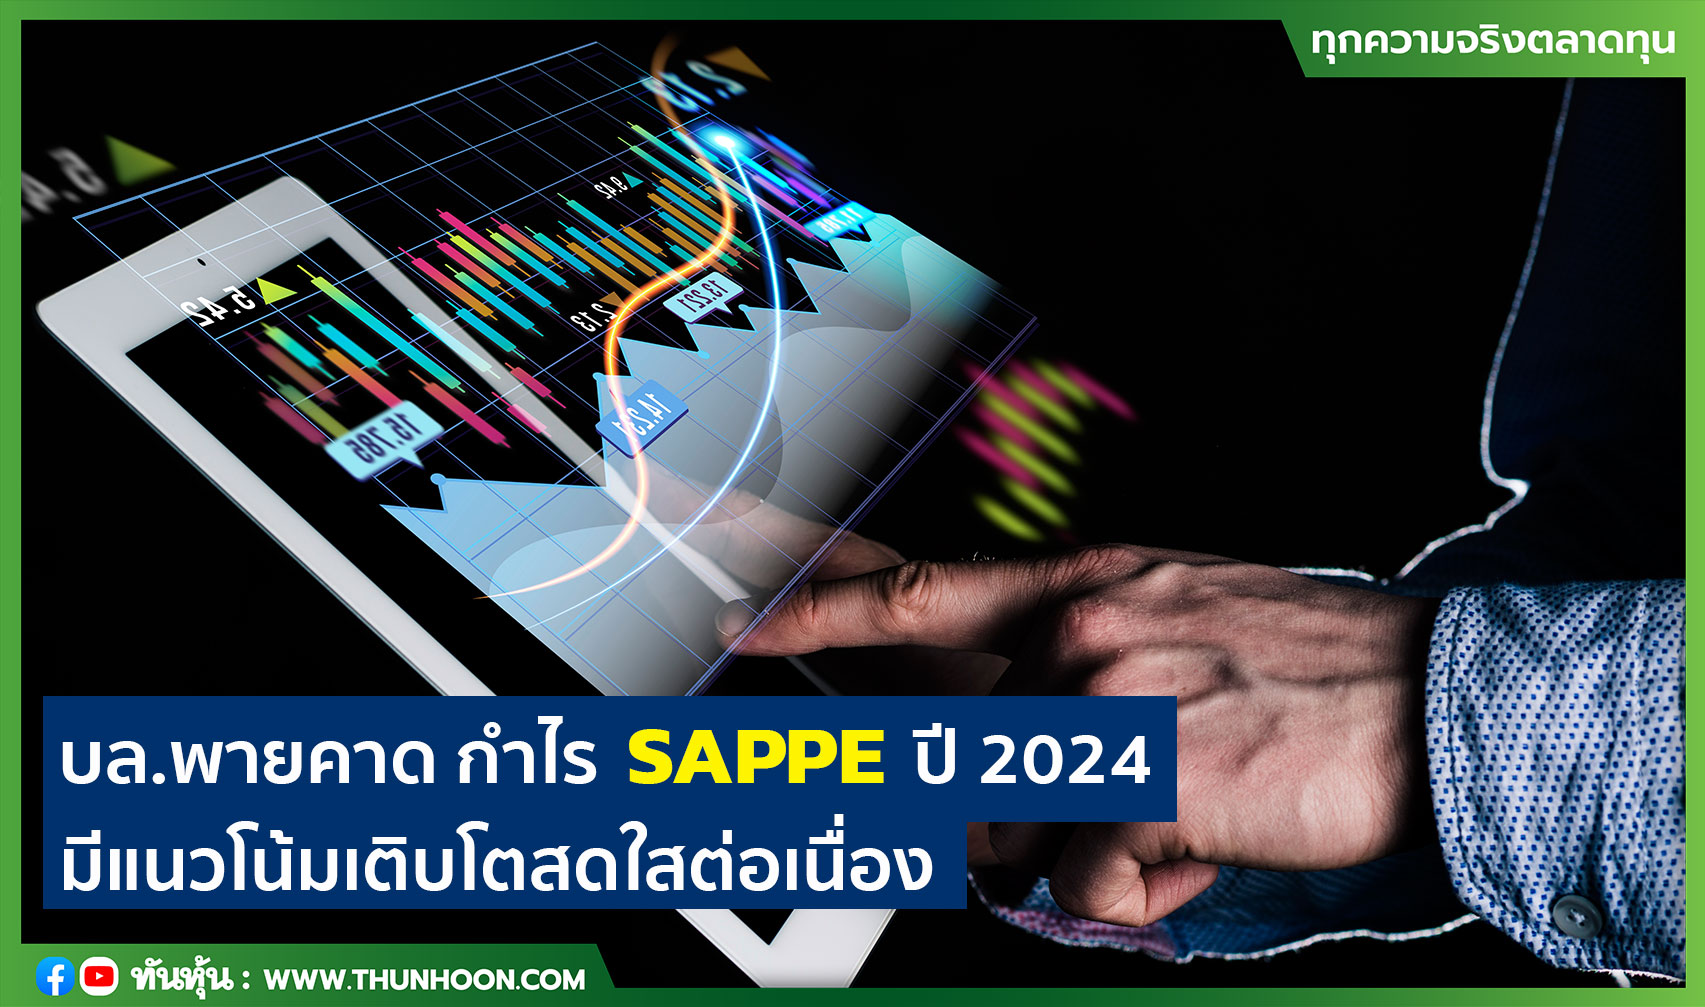 บล.พายคาด กำไร SAPPE ปี 2024 มีแนวโน้มเติบโตสดใสต่อเนื่อง